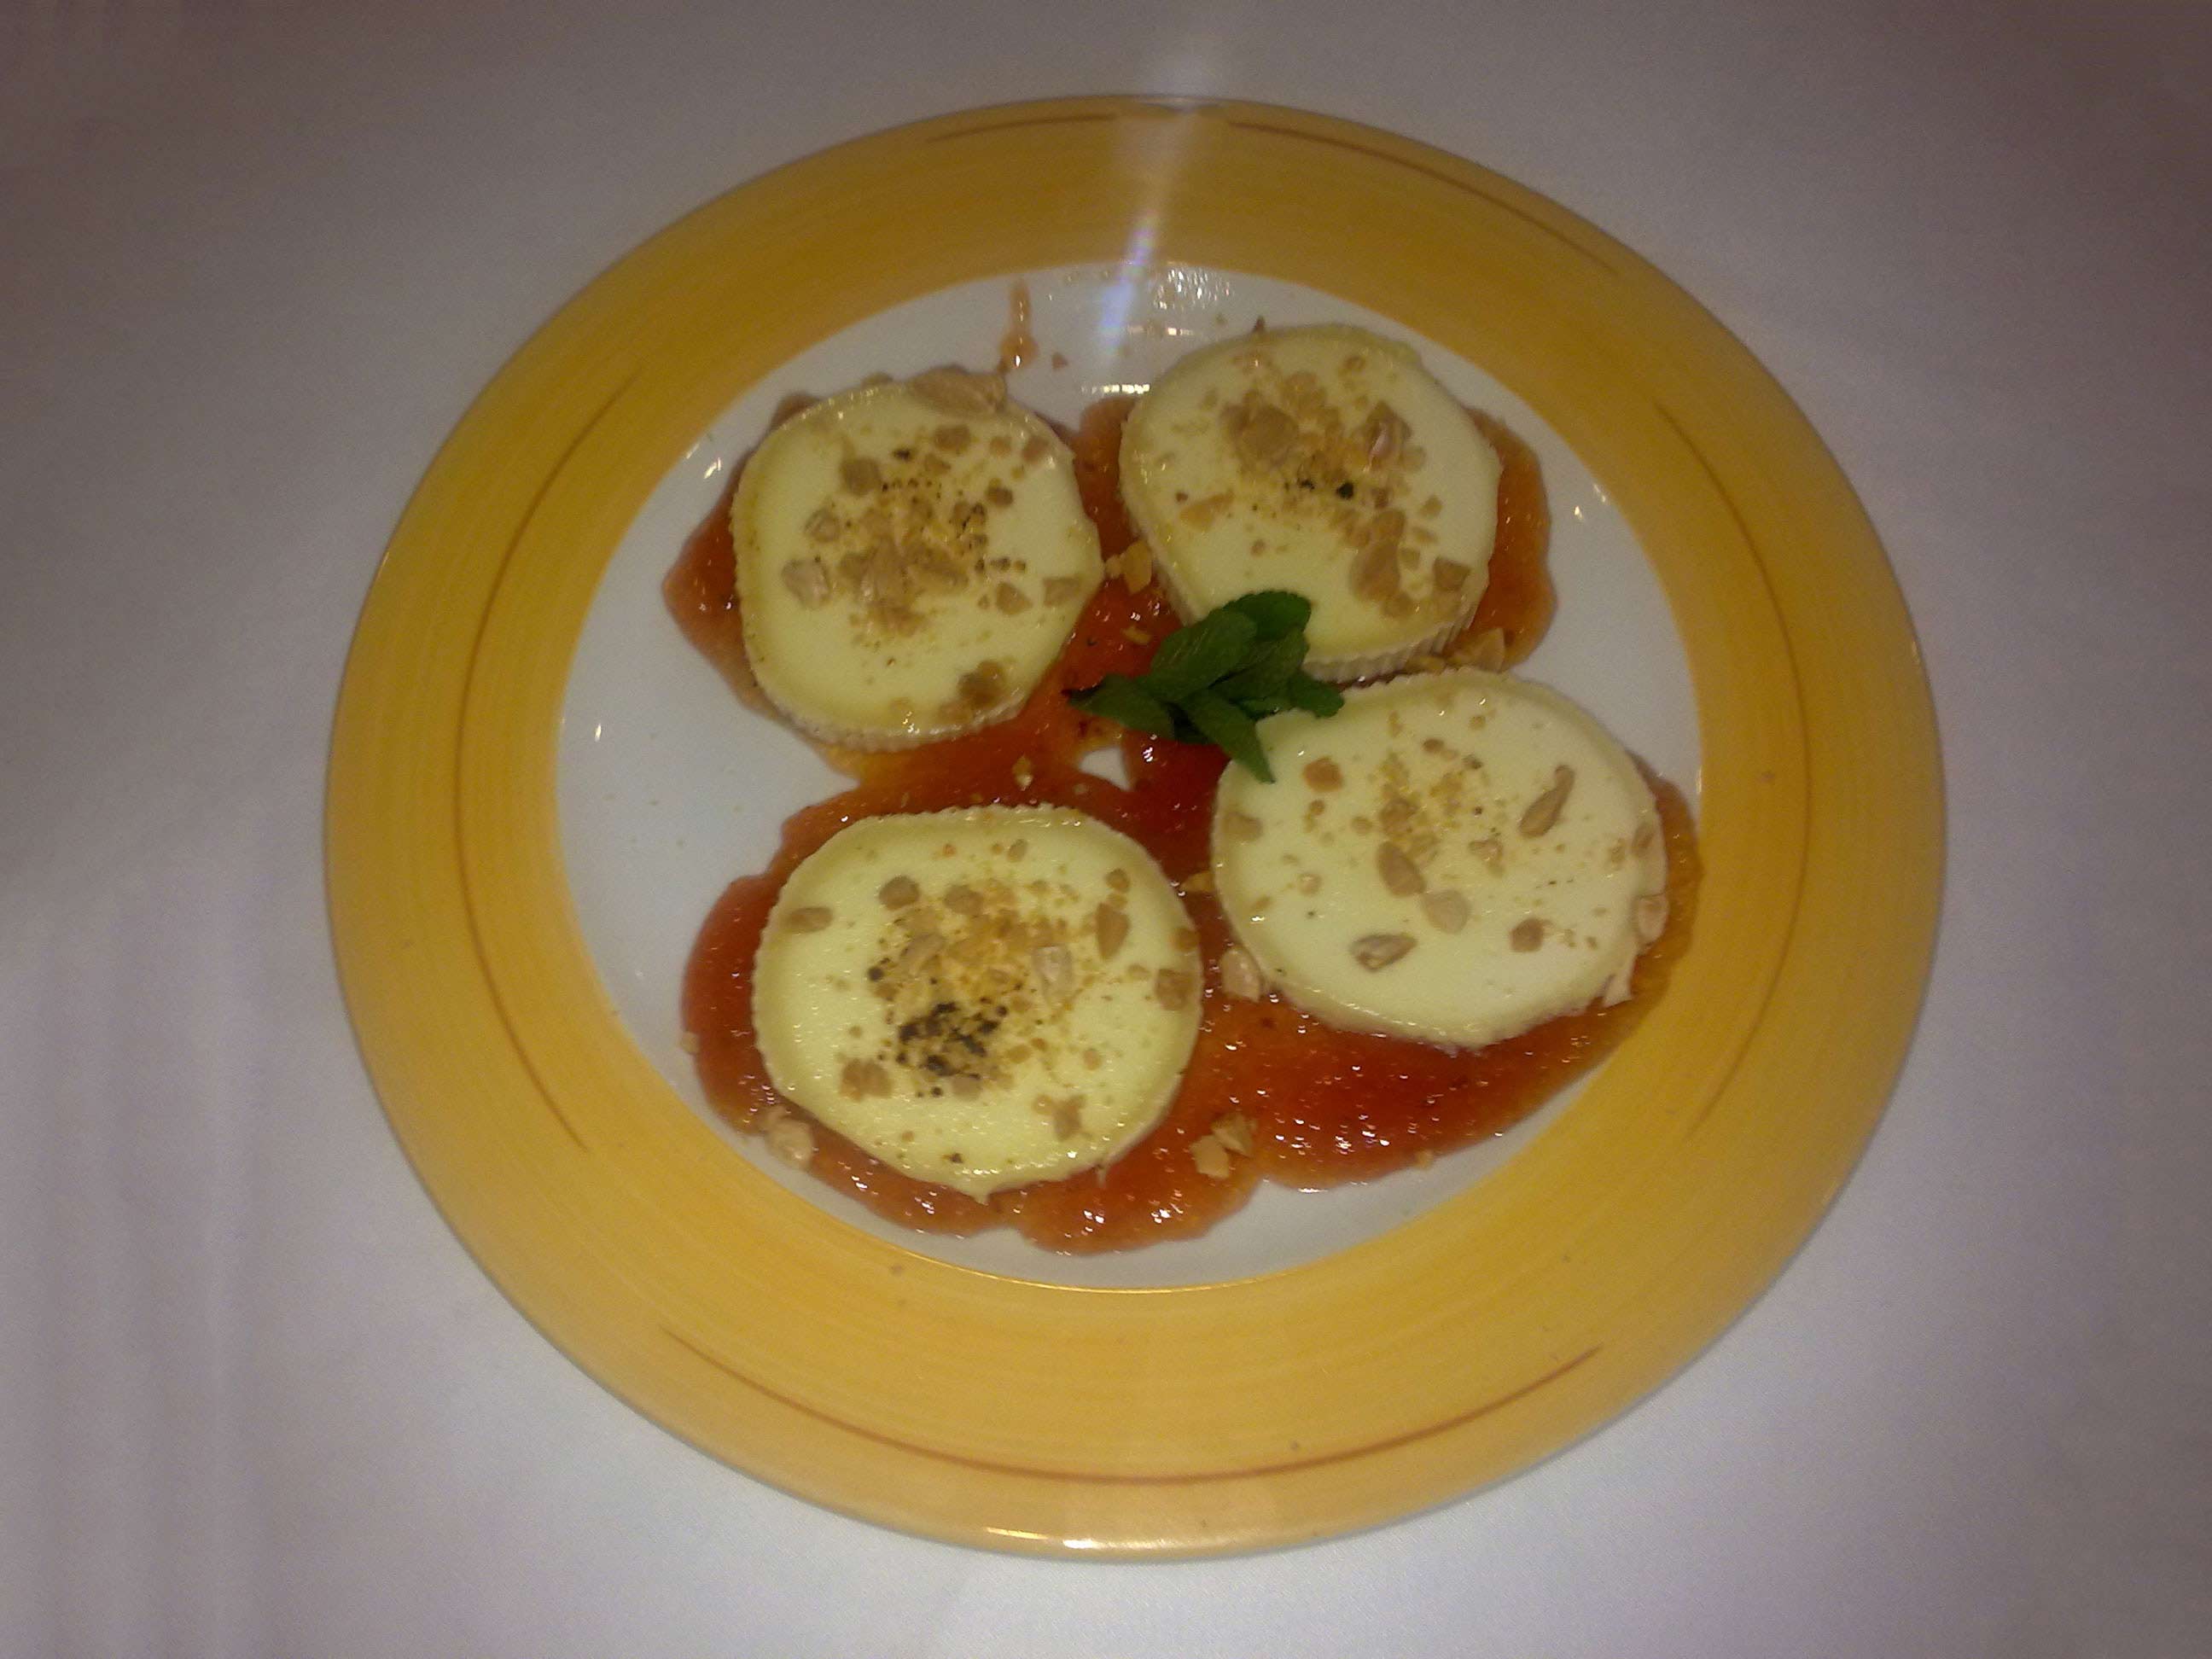 Plato de queso rulo con confitura de tomate